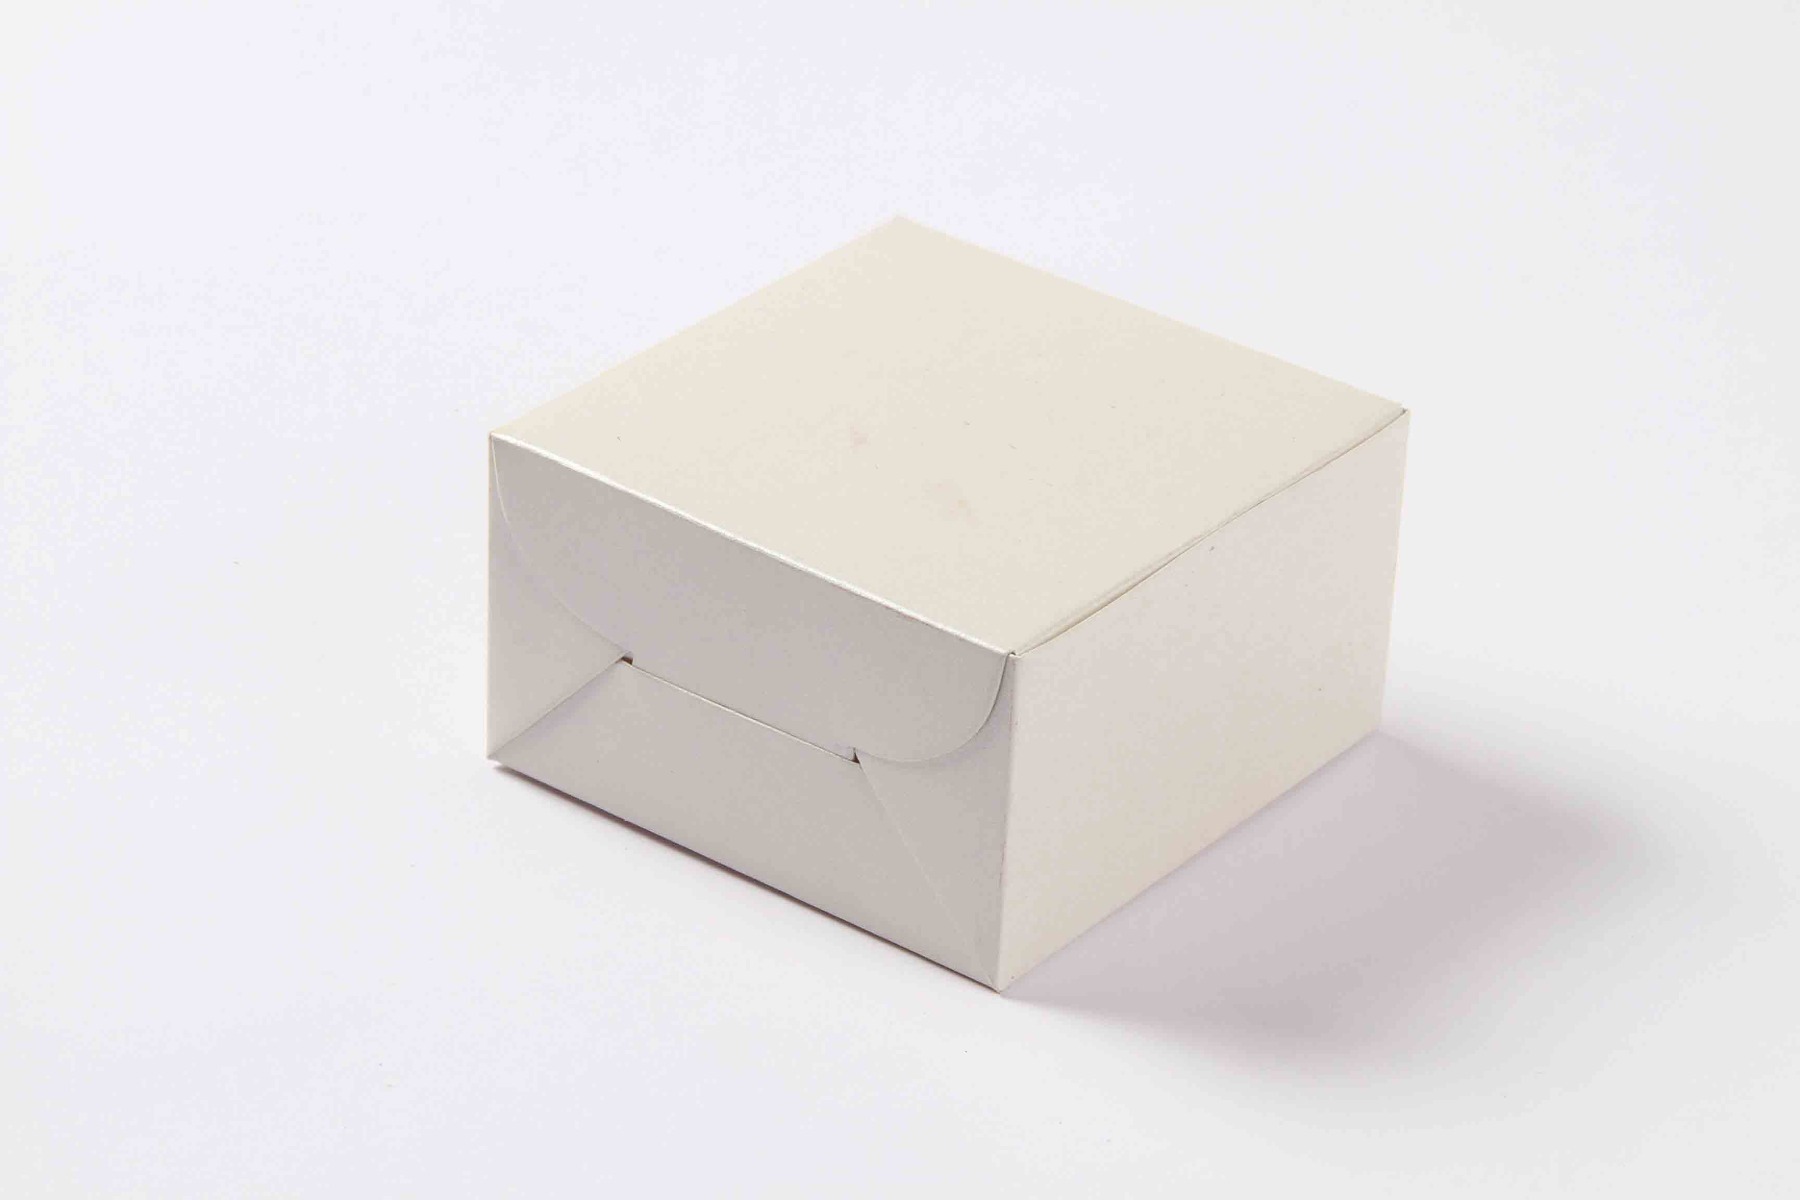 Small Size Cube Box No 6 - White-8588